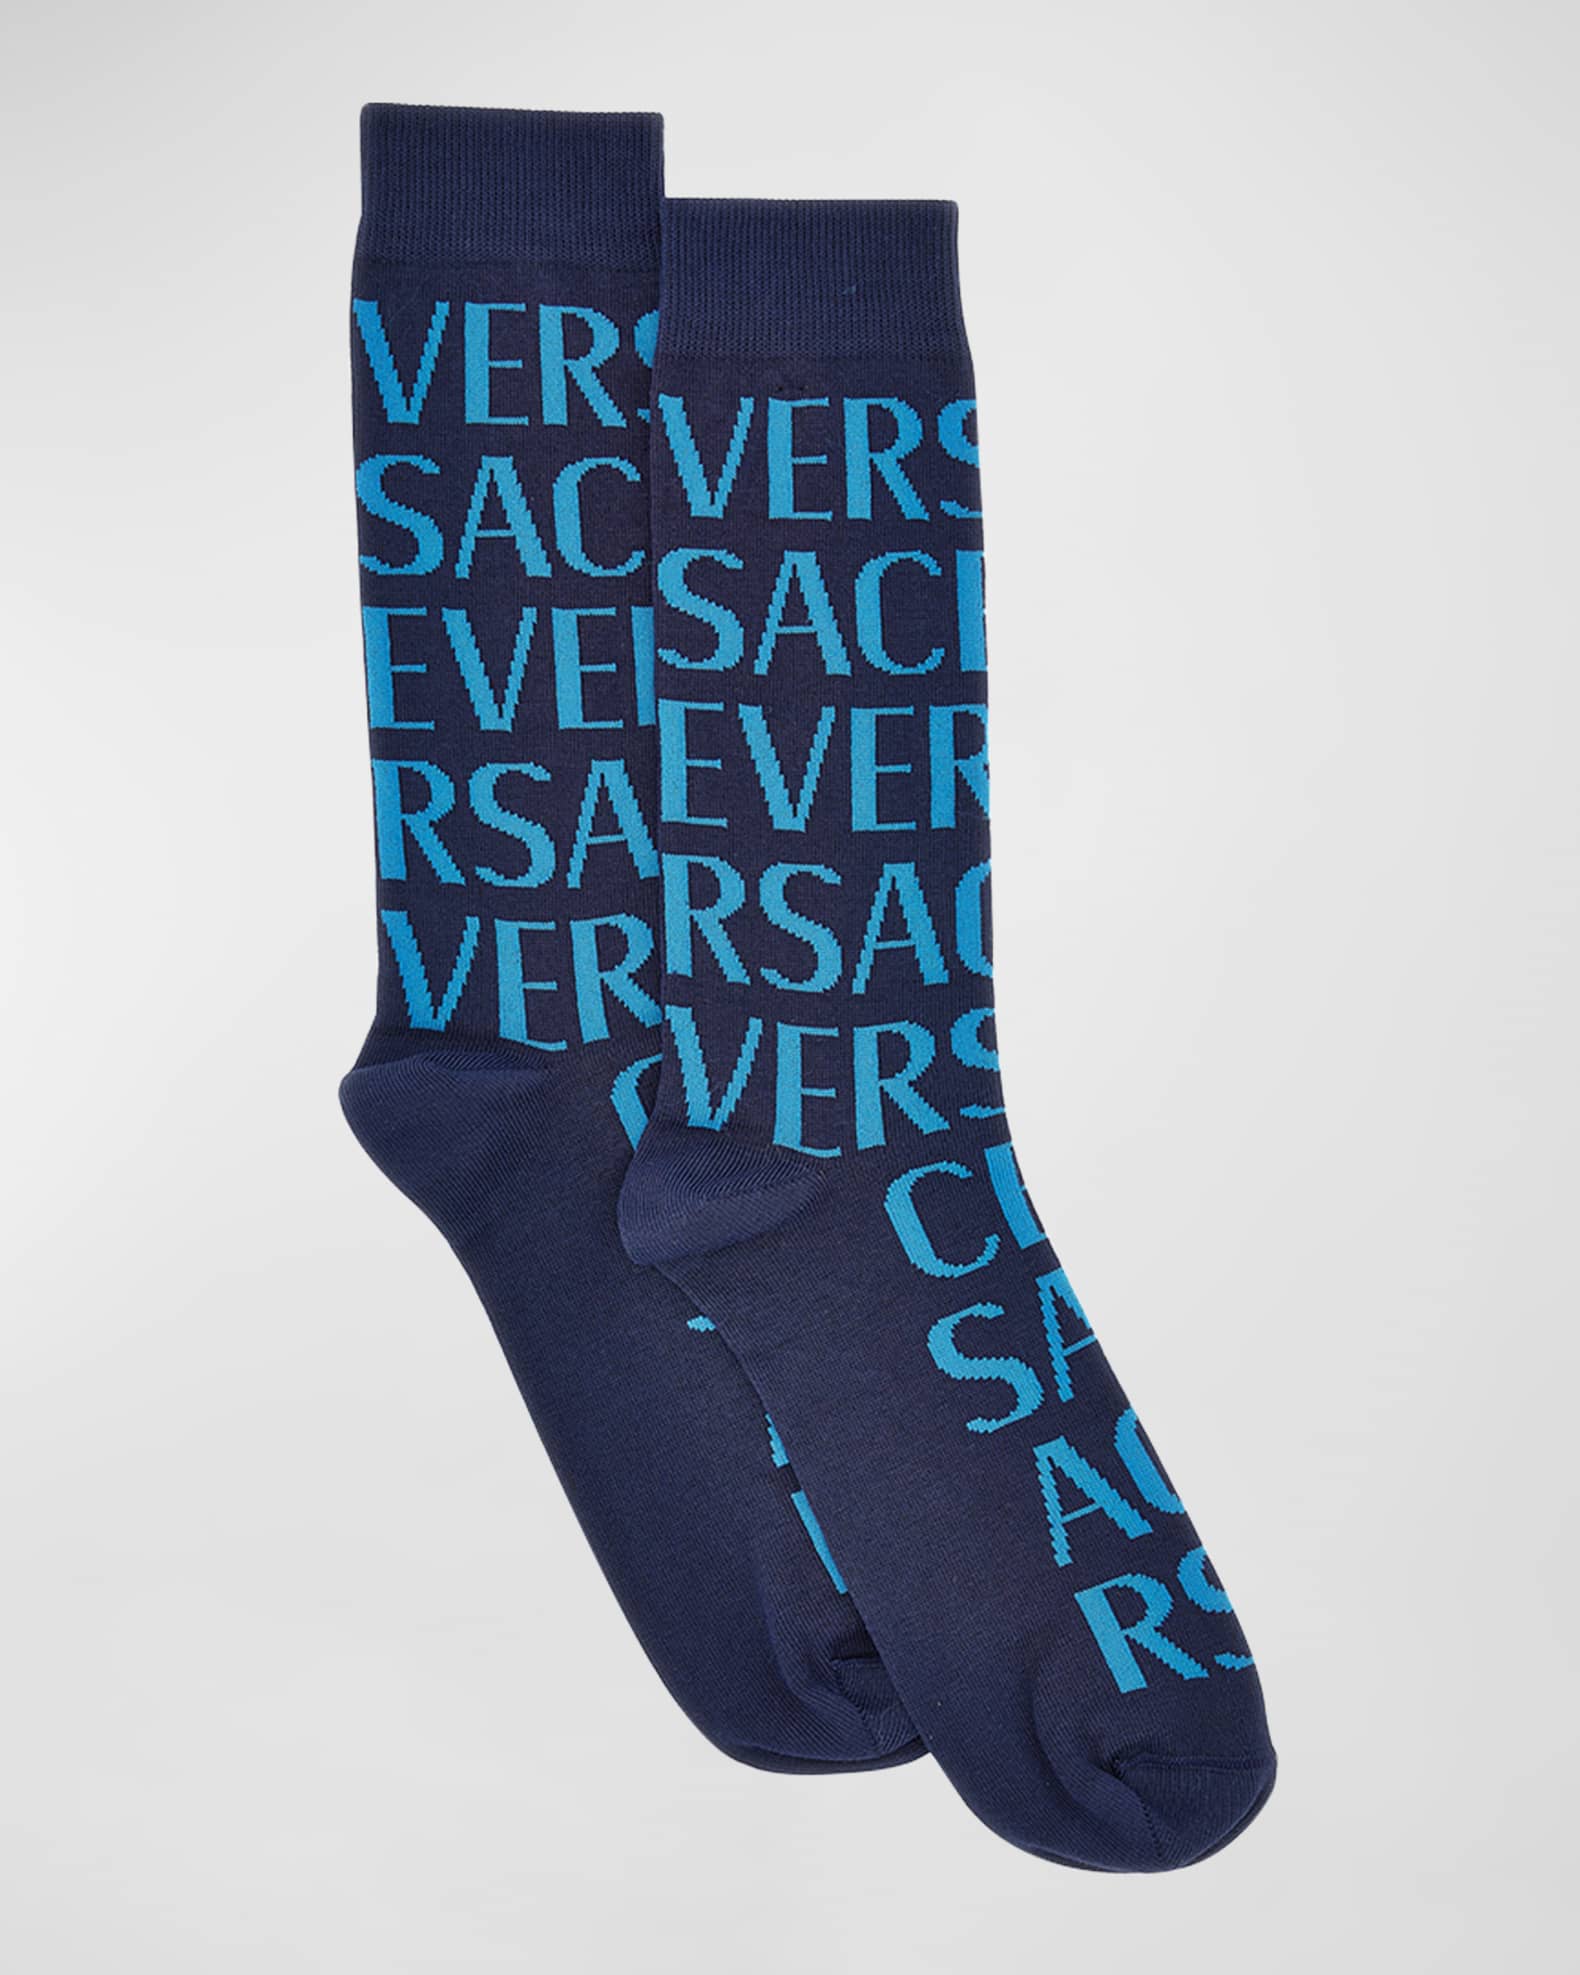 Gianni Versace Mens Socks on Sale | website.jkuat.ac.ke